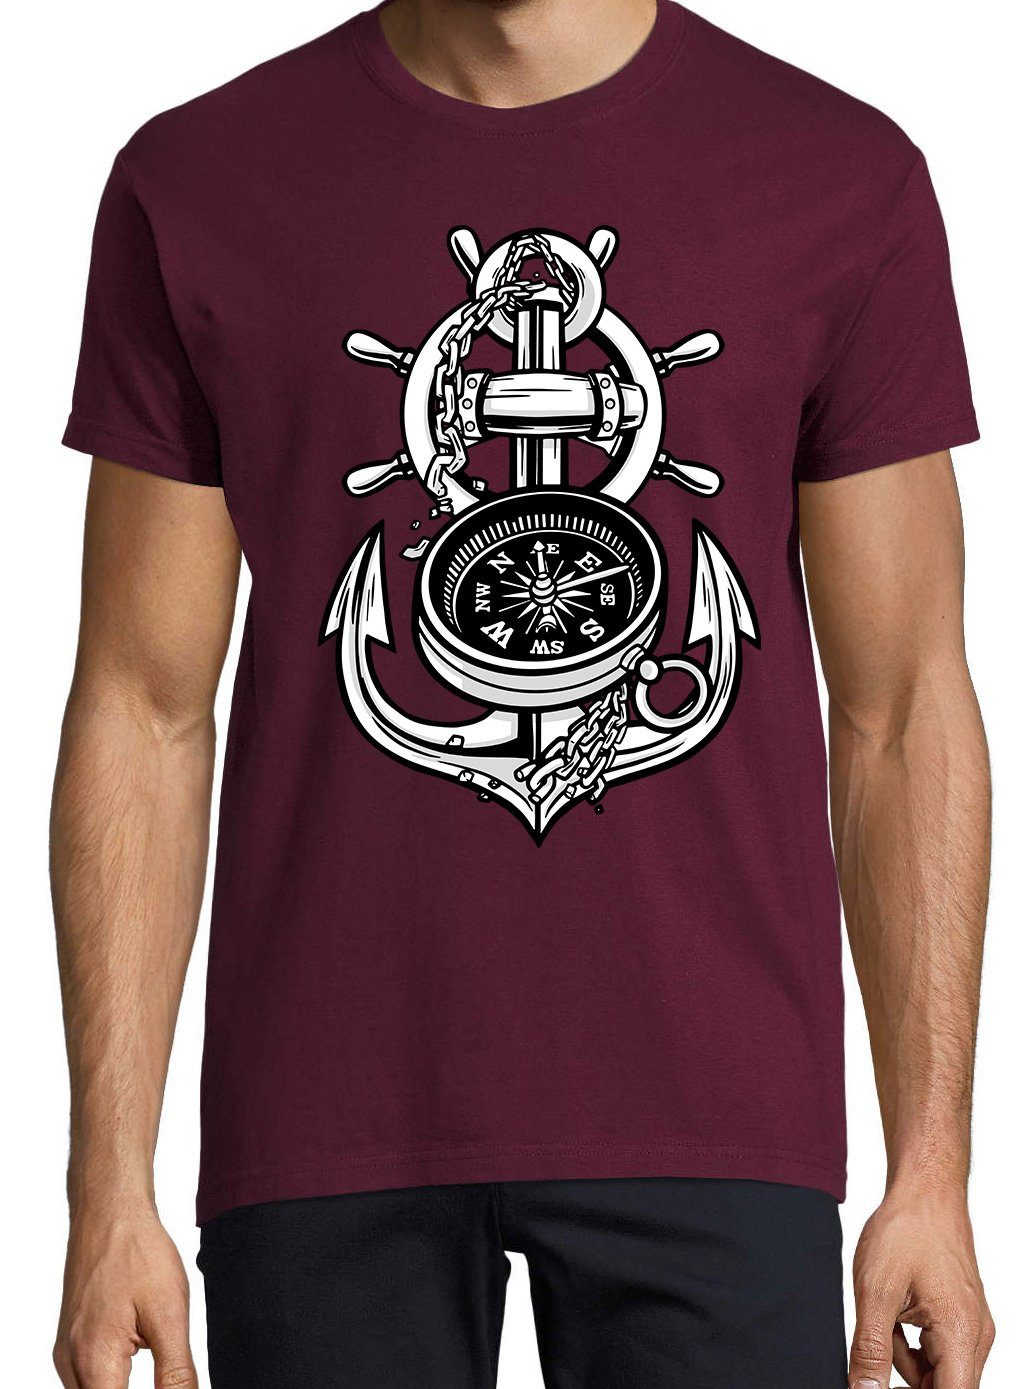 Frontprint Anker Shirt Designz Kompass trendigem Youth T-Shirt mit Herren Burgund